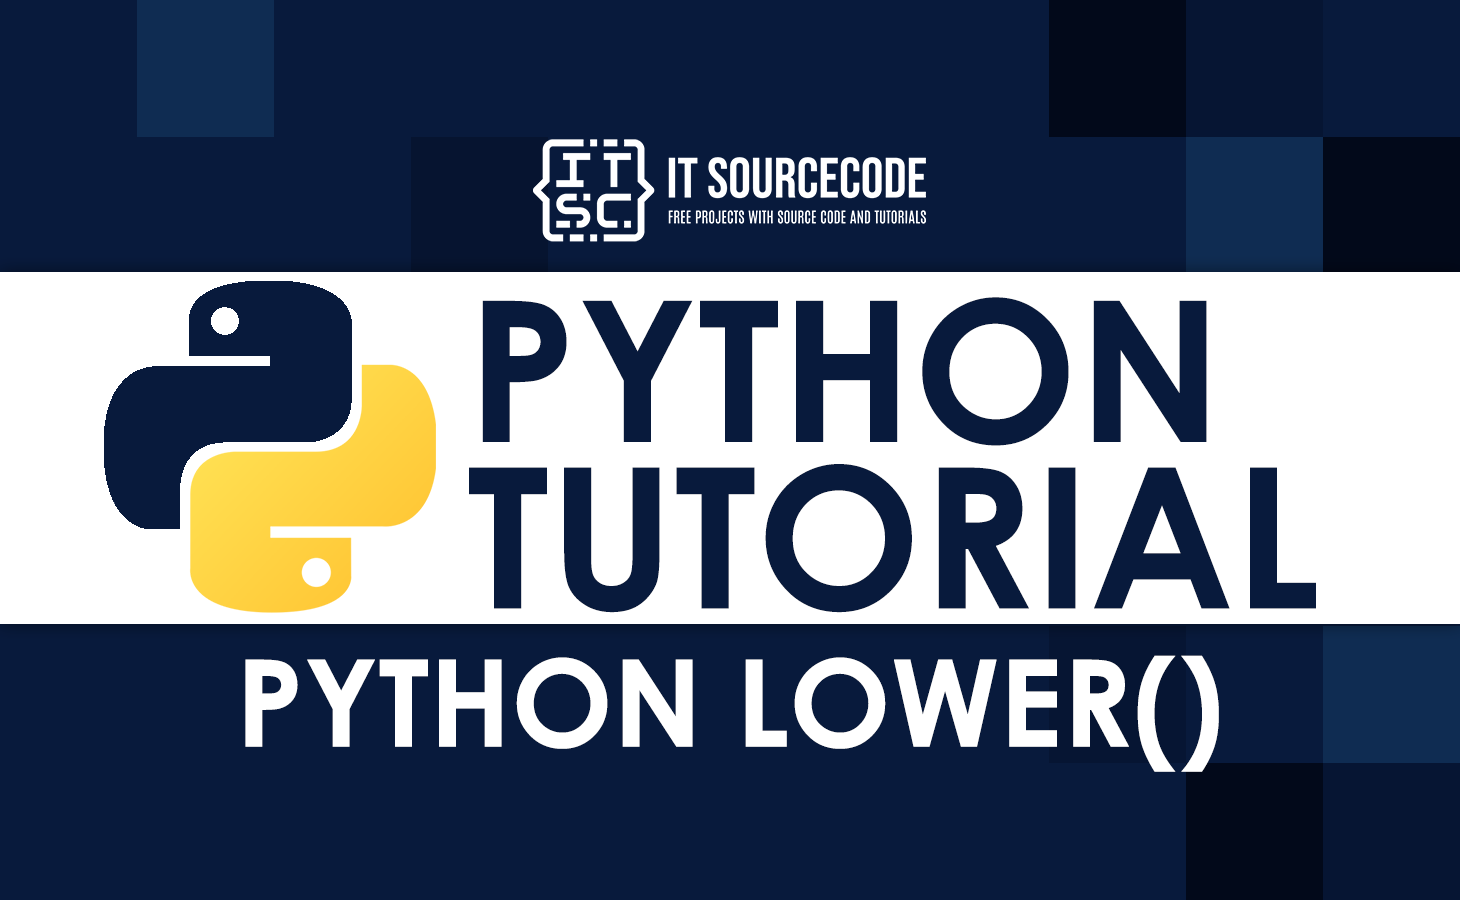 Python lower()